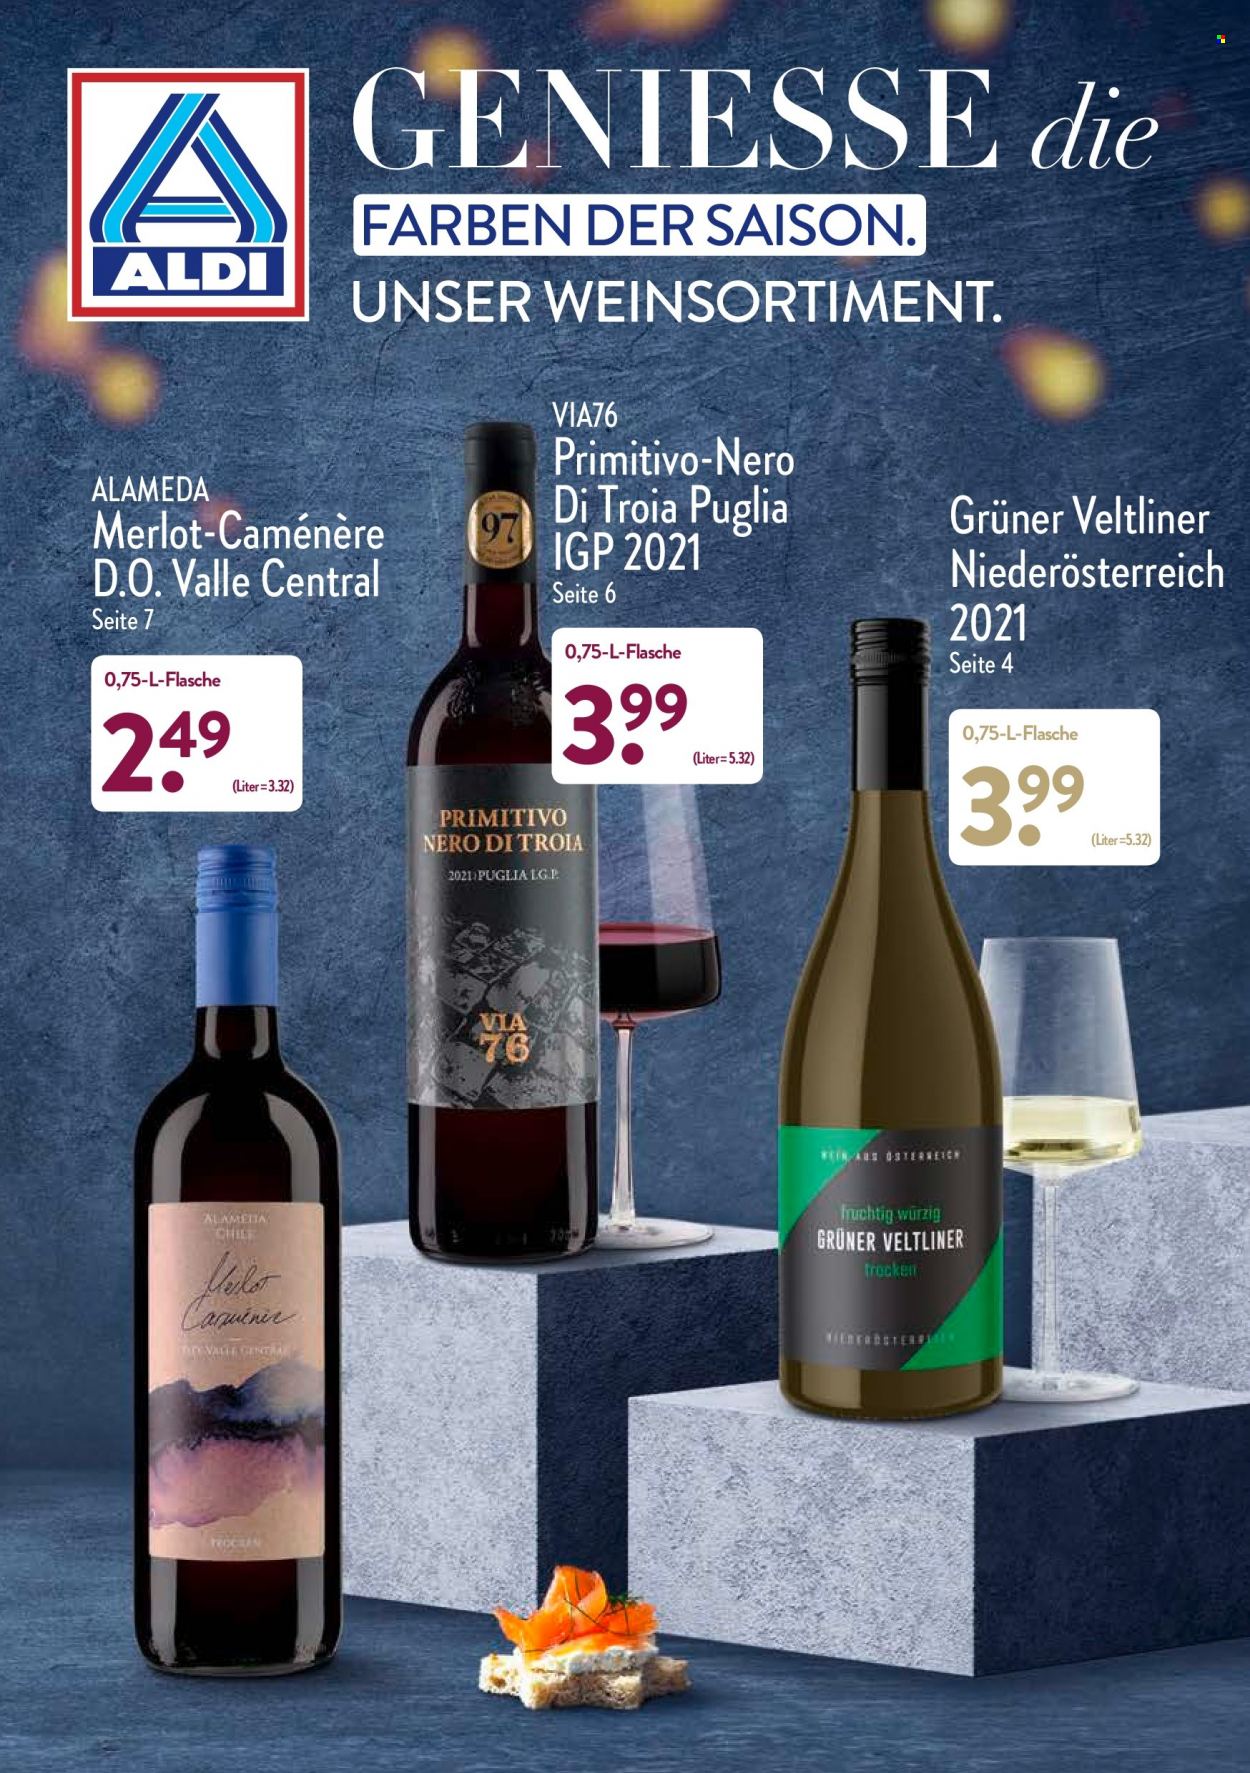 Prospekte ALDI Nord - Produkte in Aktion - LG, Alkohol, Wein, Primitivo, Merlot, Weißwein, Grüner Veltliner. Seite 1.